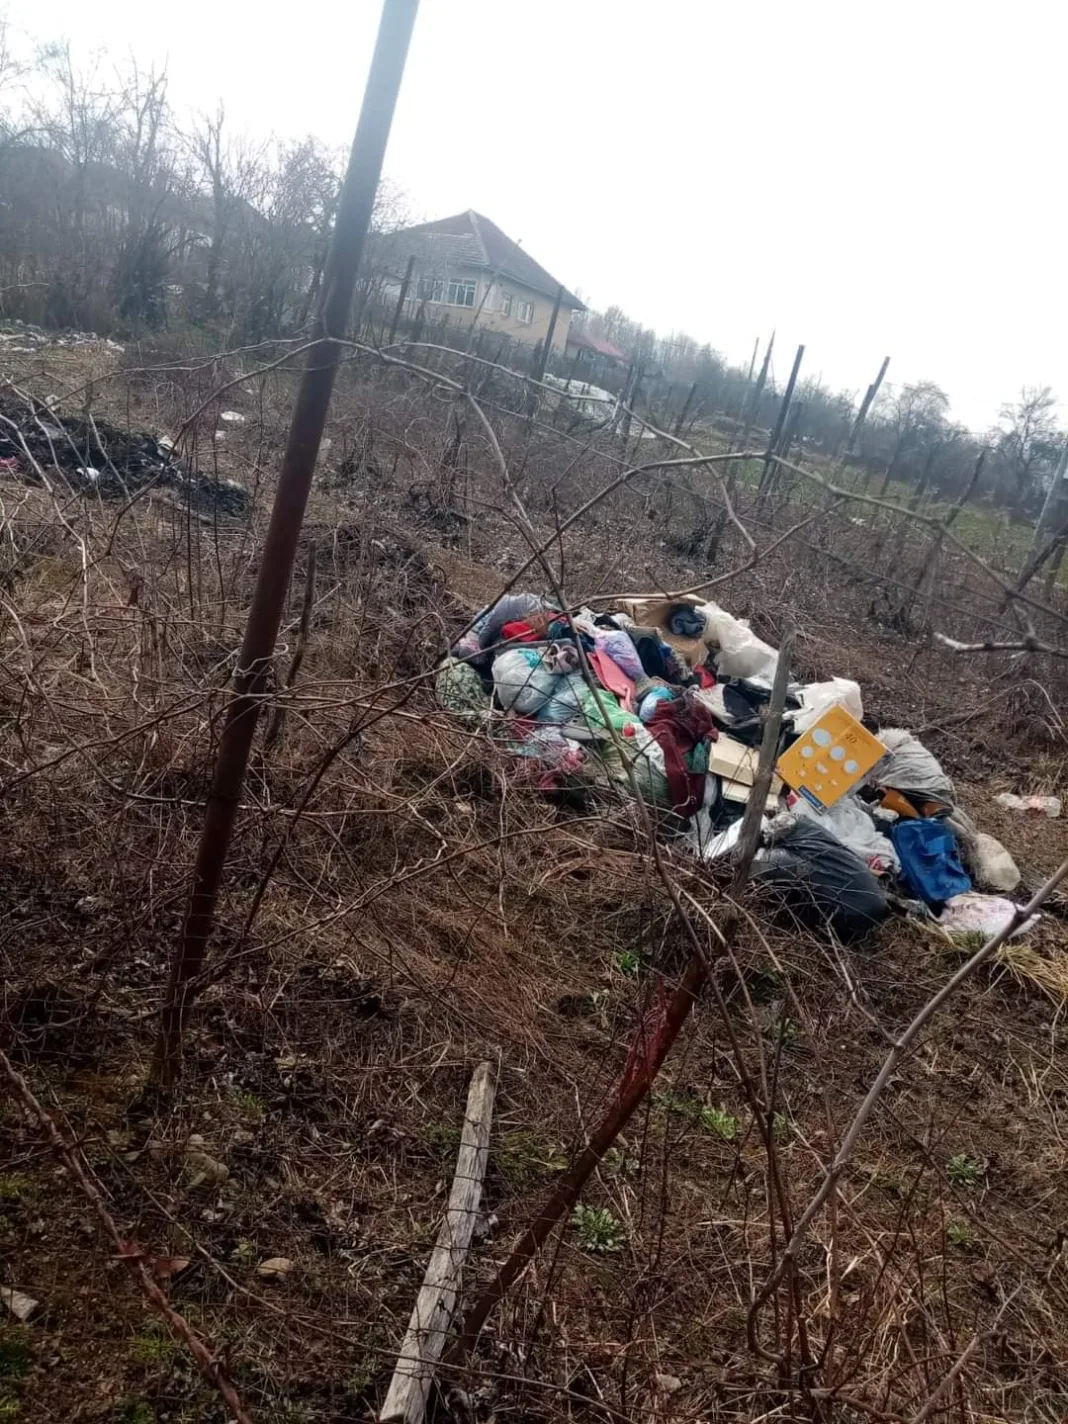 Amezi aplicate de Garda de Mediu pentru abandon de gunoaie în Tismana